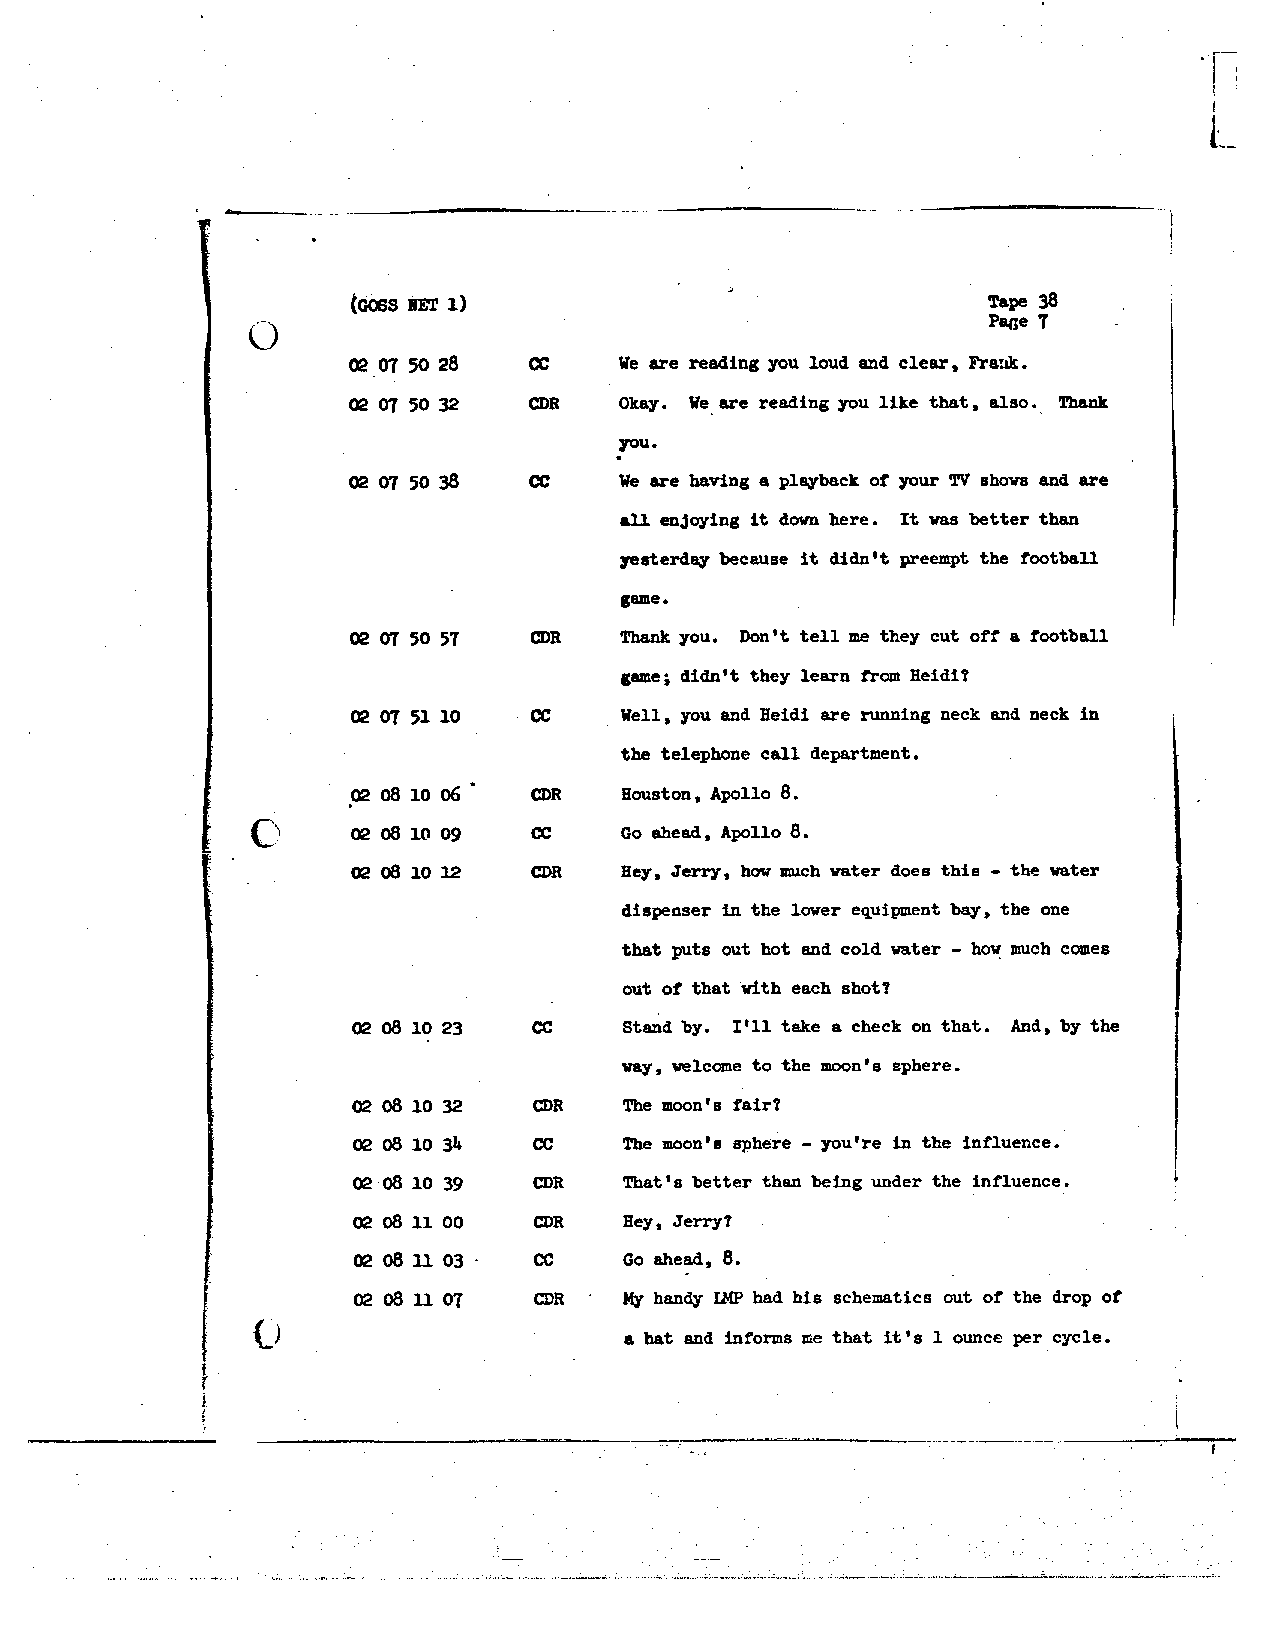 Page 300 of Apollo 8’s original transcript